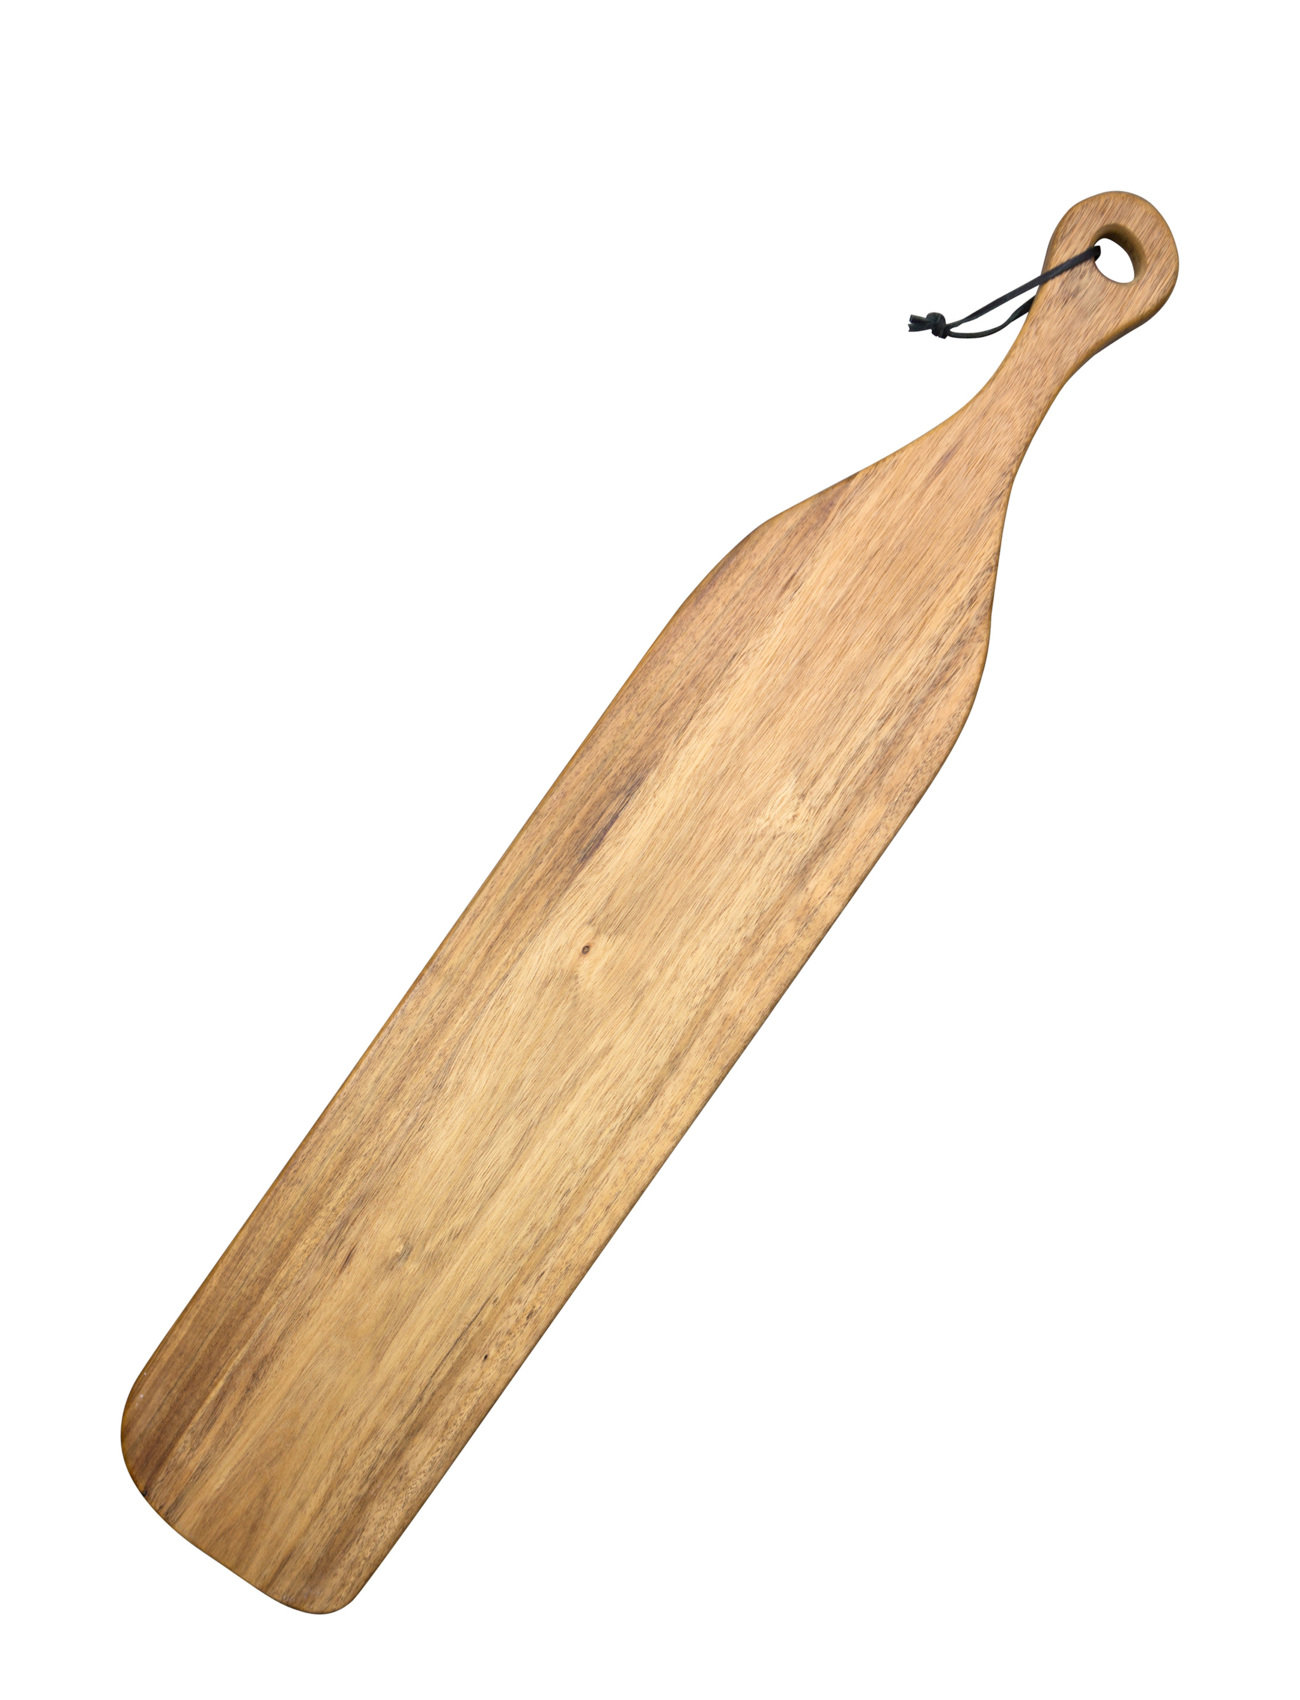 Cutting Board Sous Vide Grand Home Kitchen Kitchen Tools Cutting Boards Wooden Cutting Boards Brown Byon